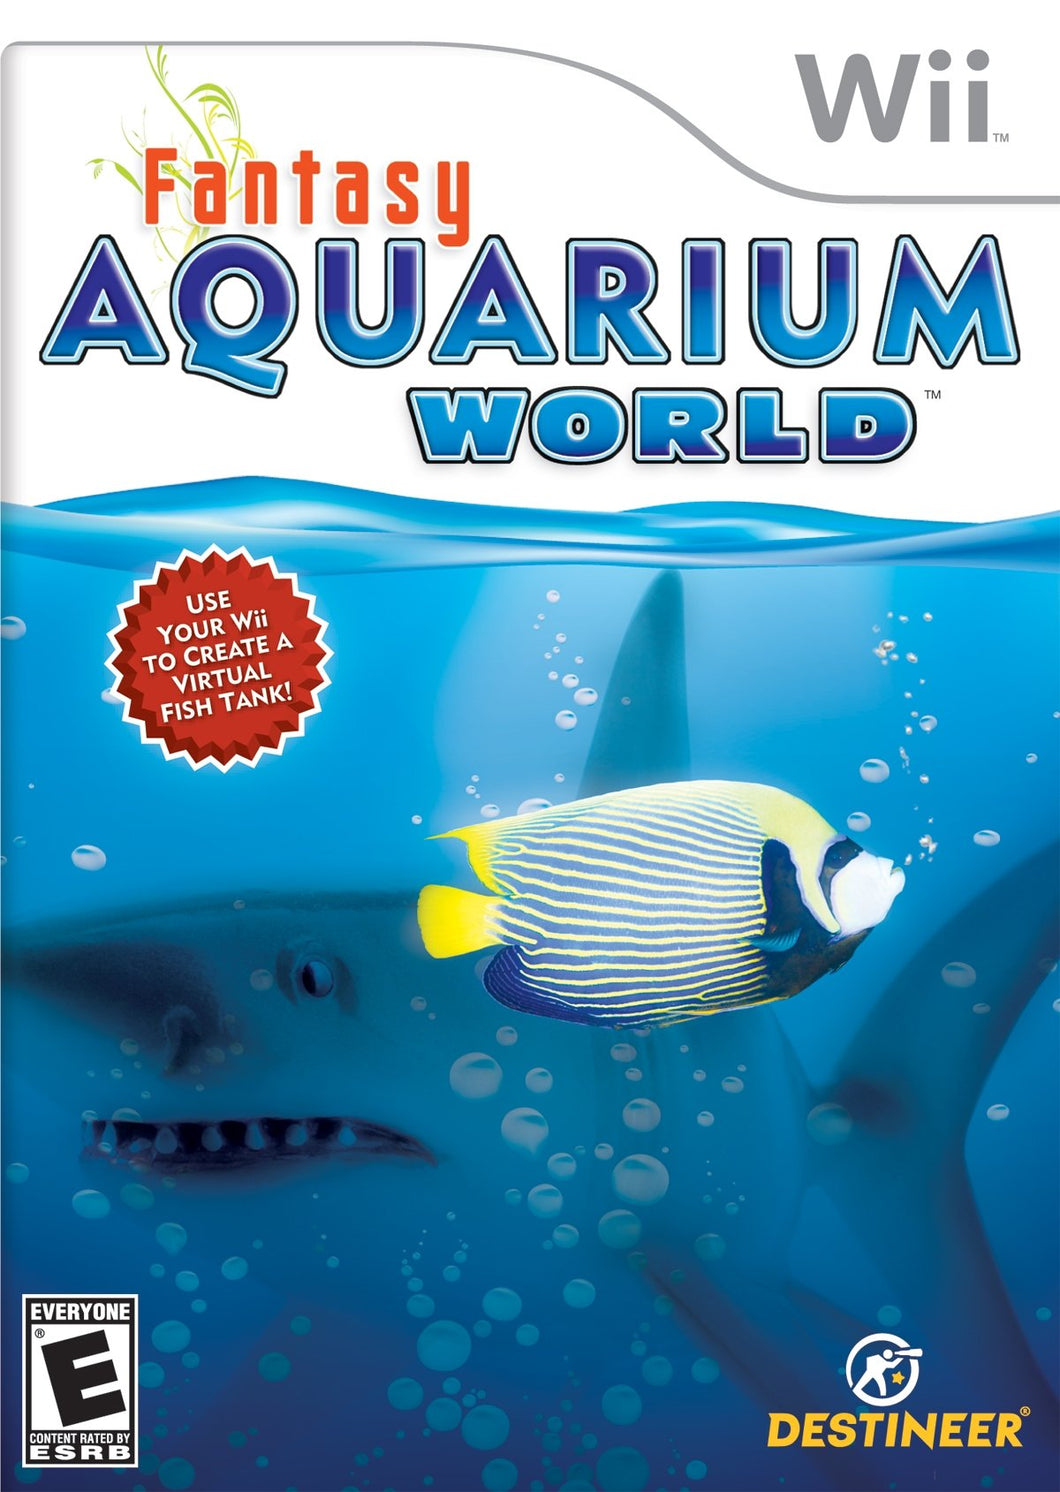 Fantasy Aquarium World Wii